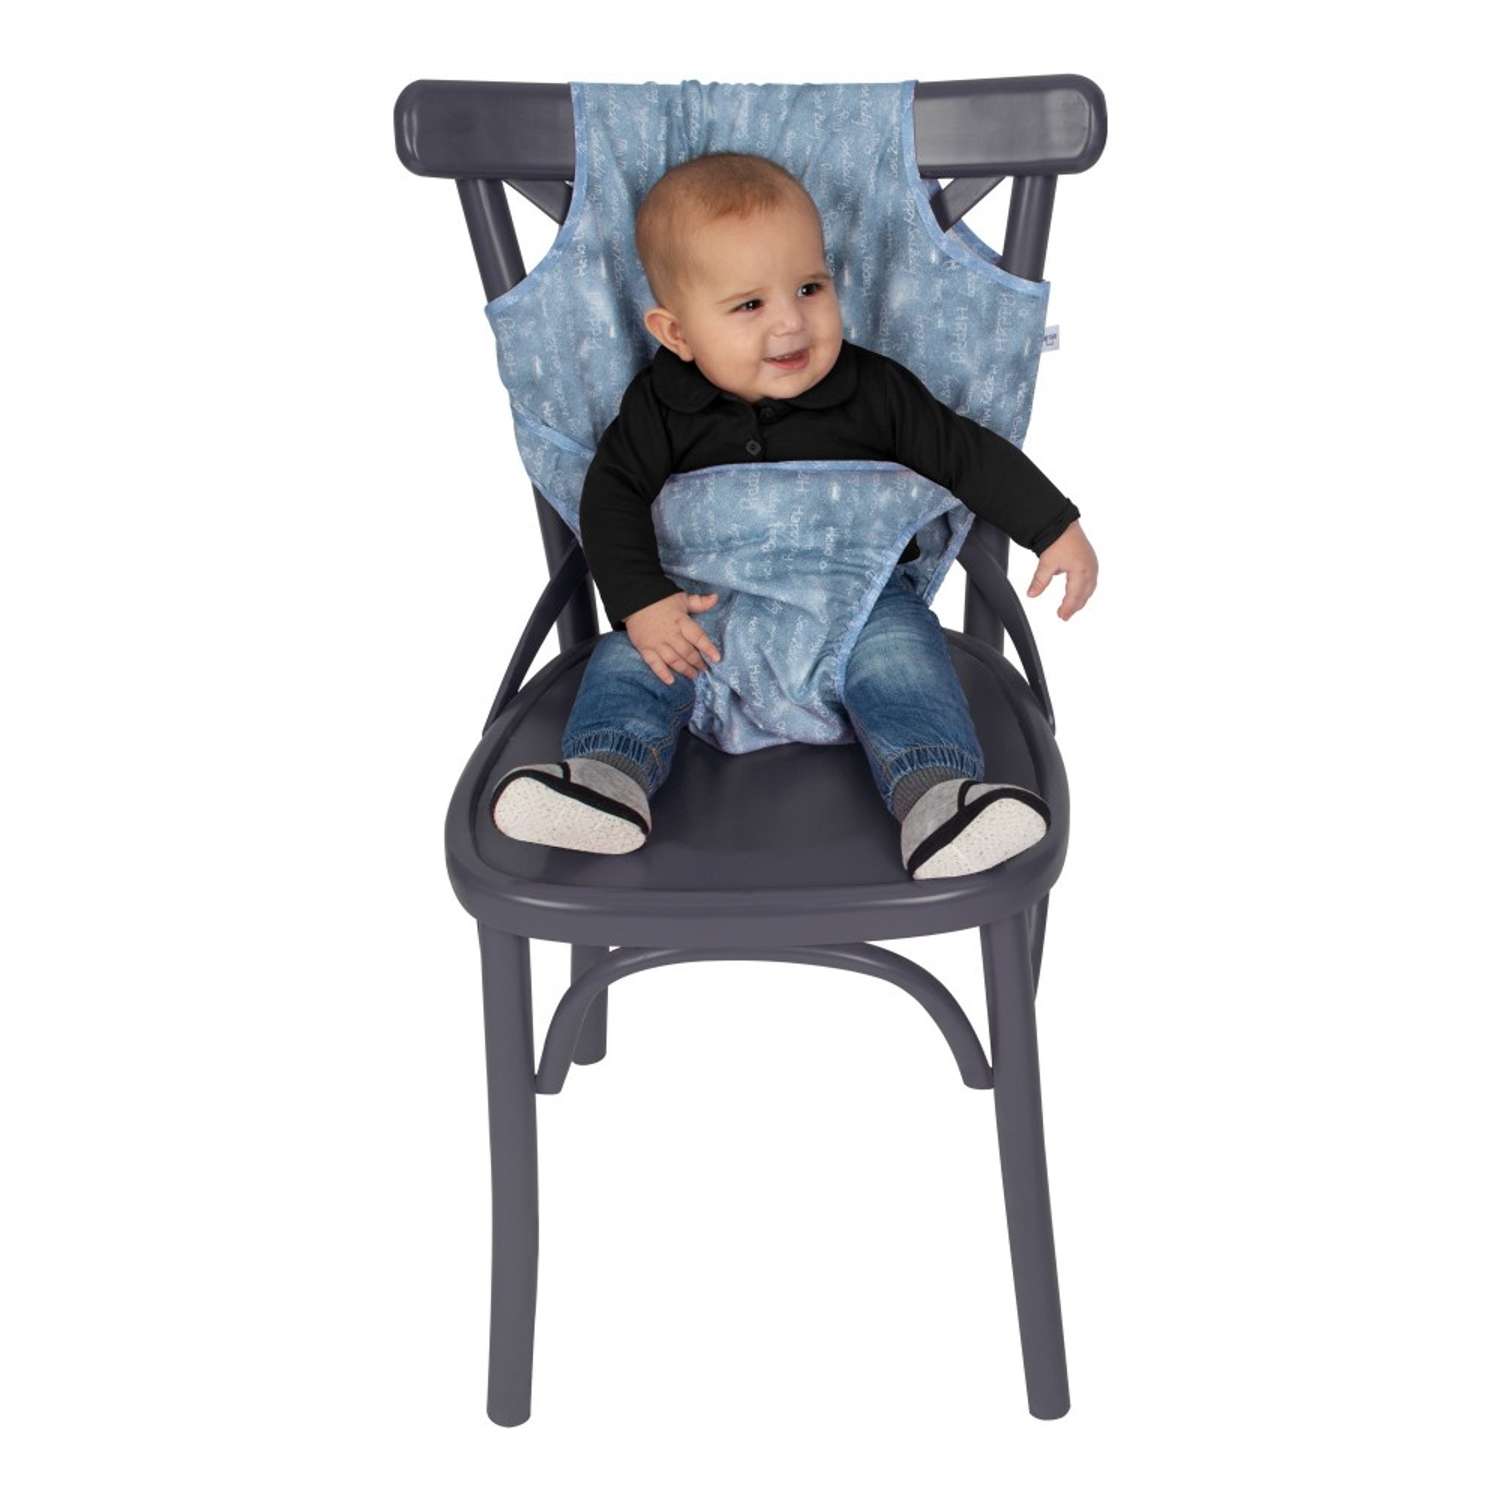 Чехол для стула SEVIBEBE защитный для предотвращения падений малыша - фото 2